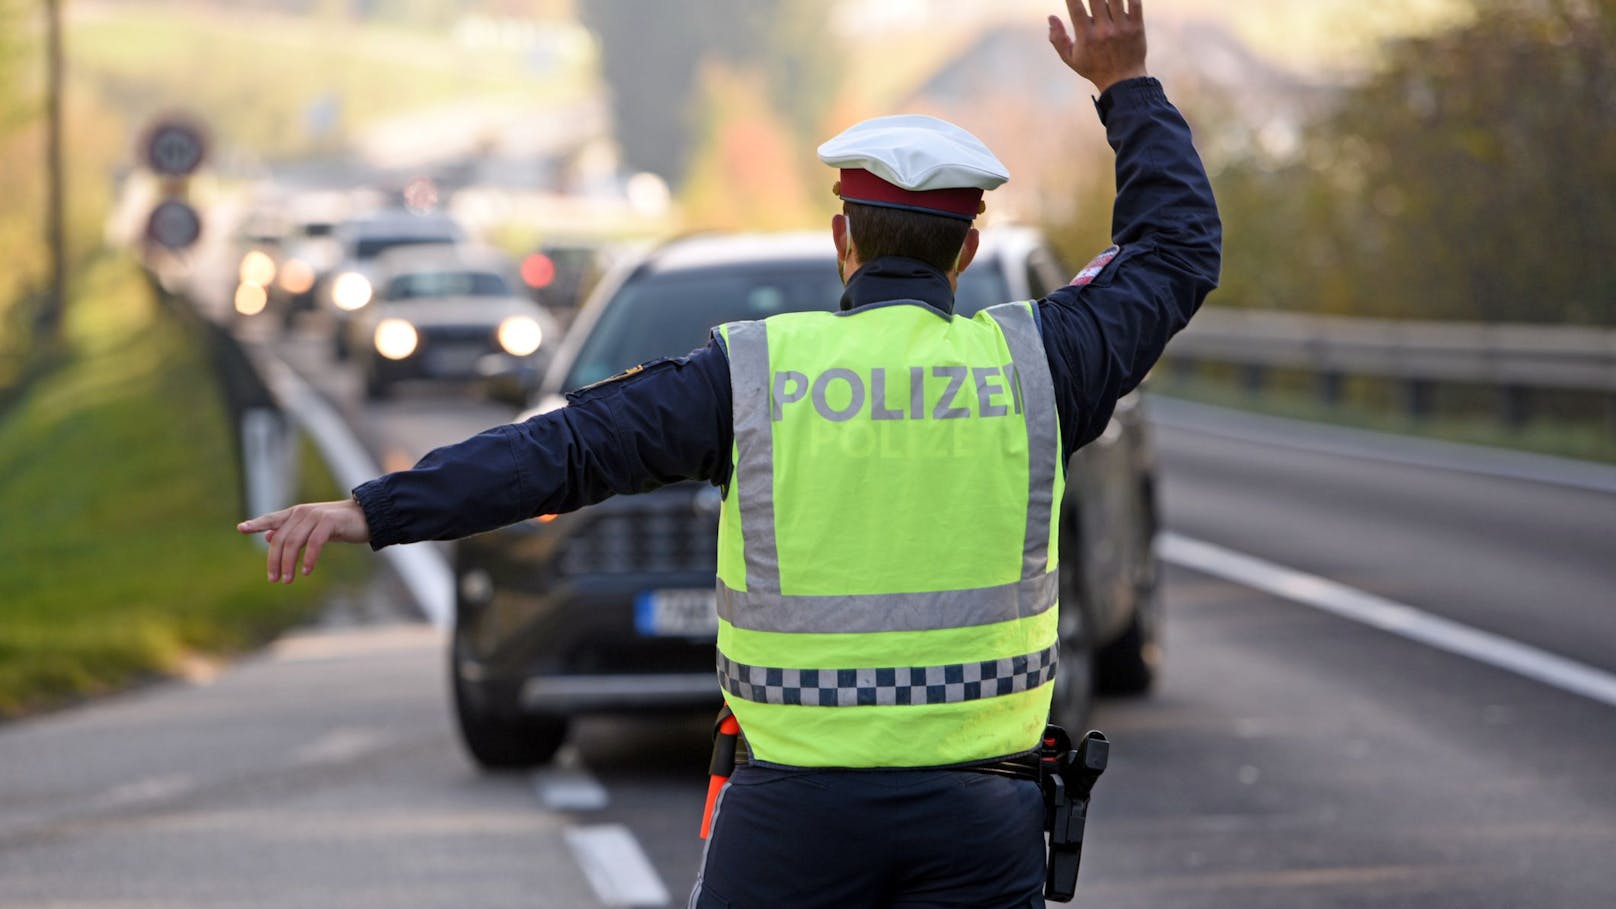 Schneller als Polizei erlaubt: Moped schafft 121 km/h